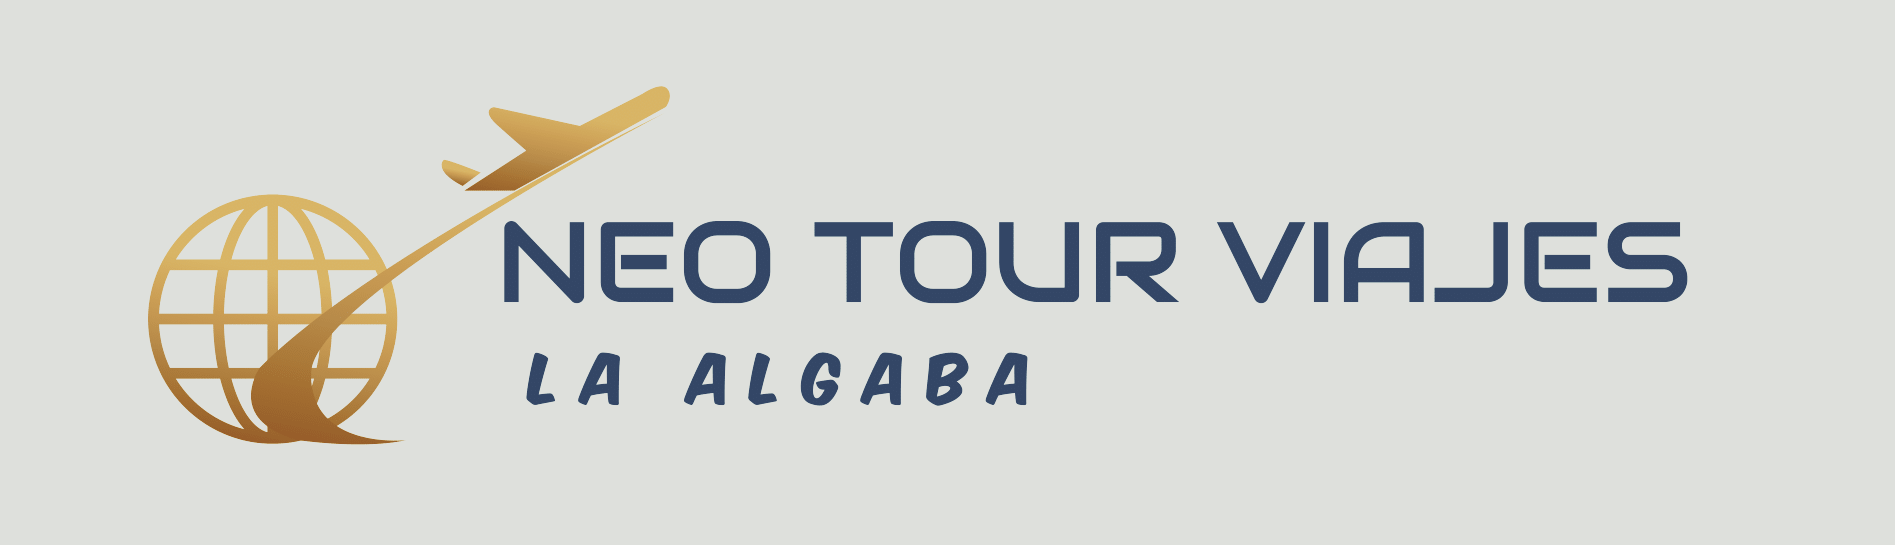 Neo Tour Viajes La Algaba